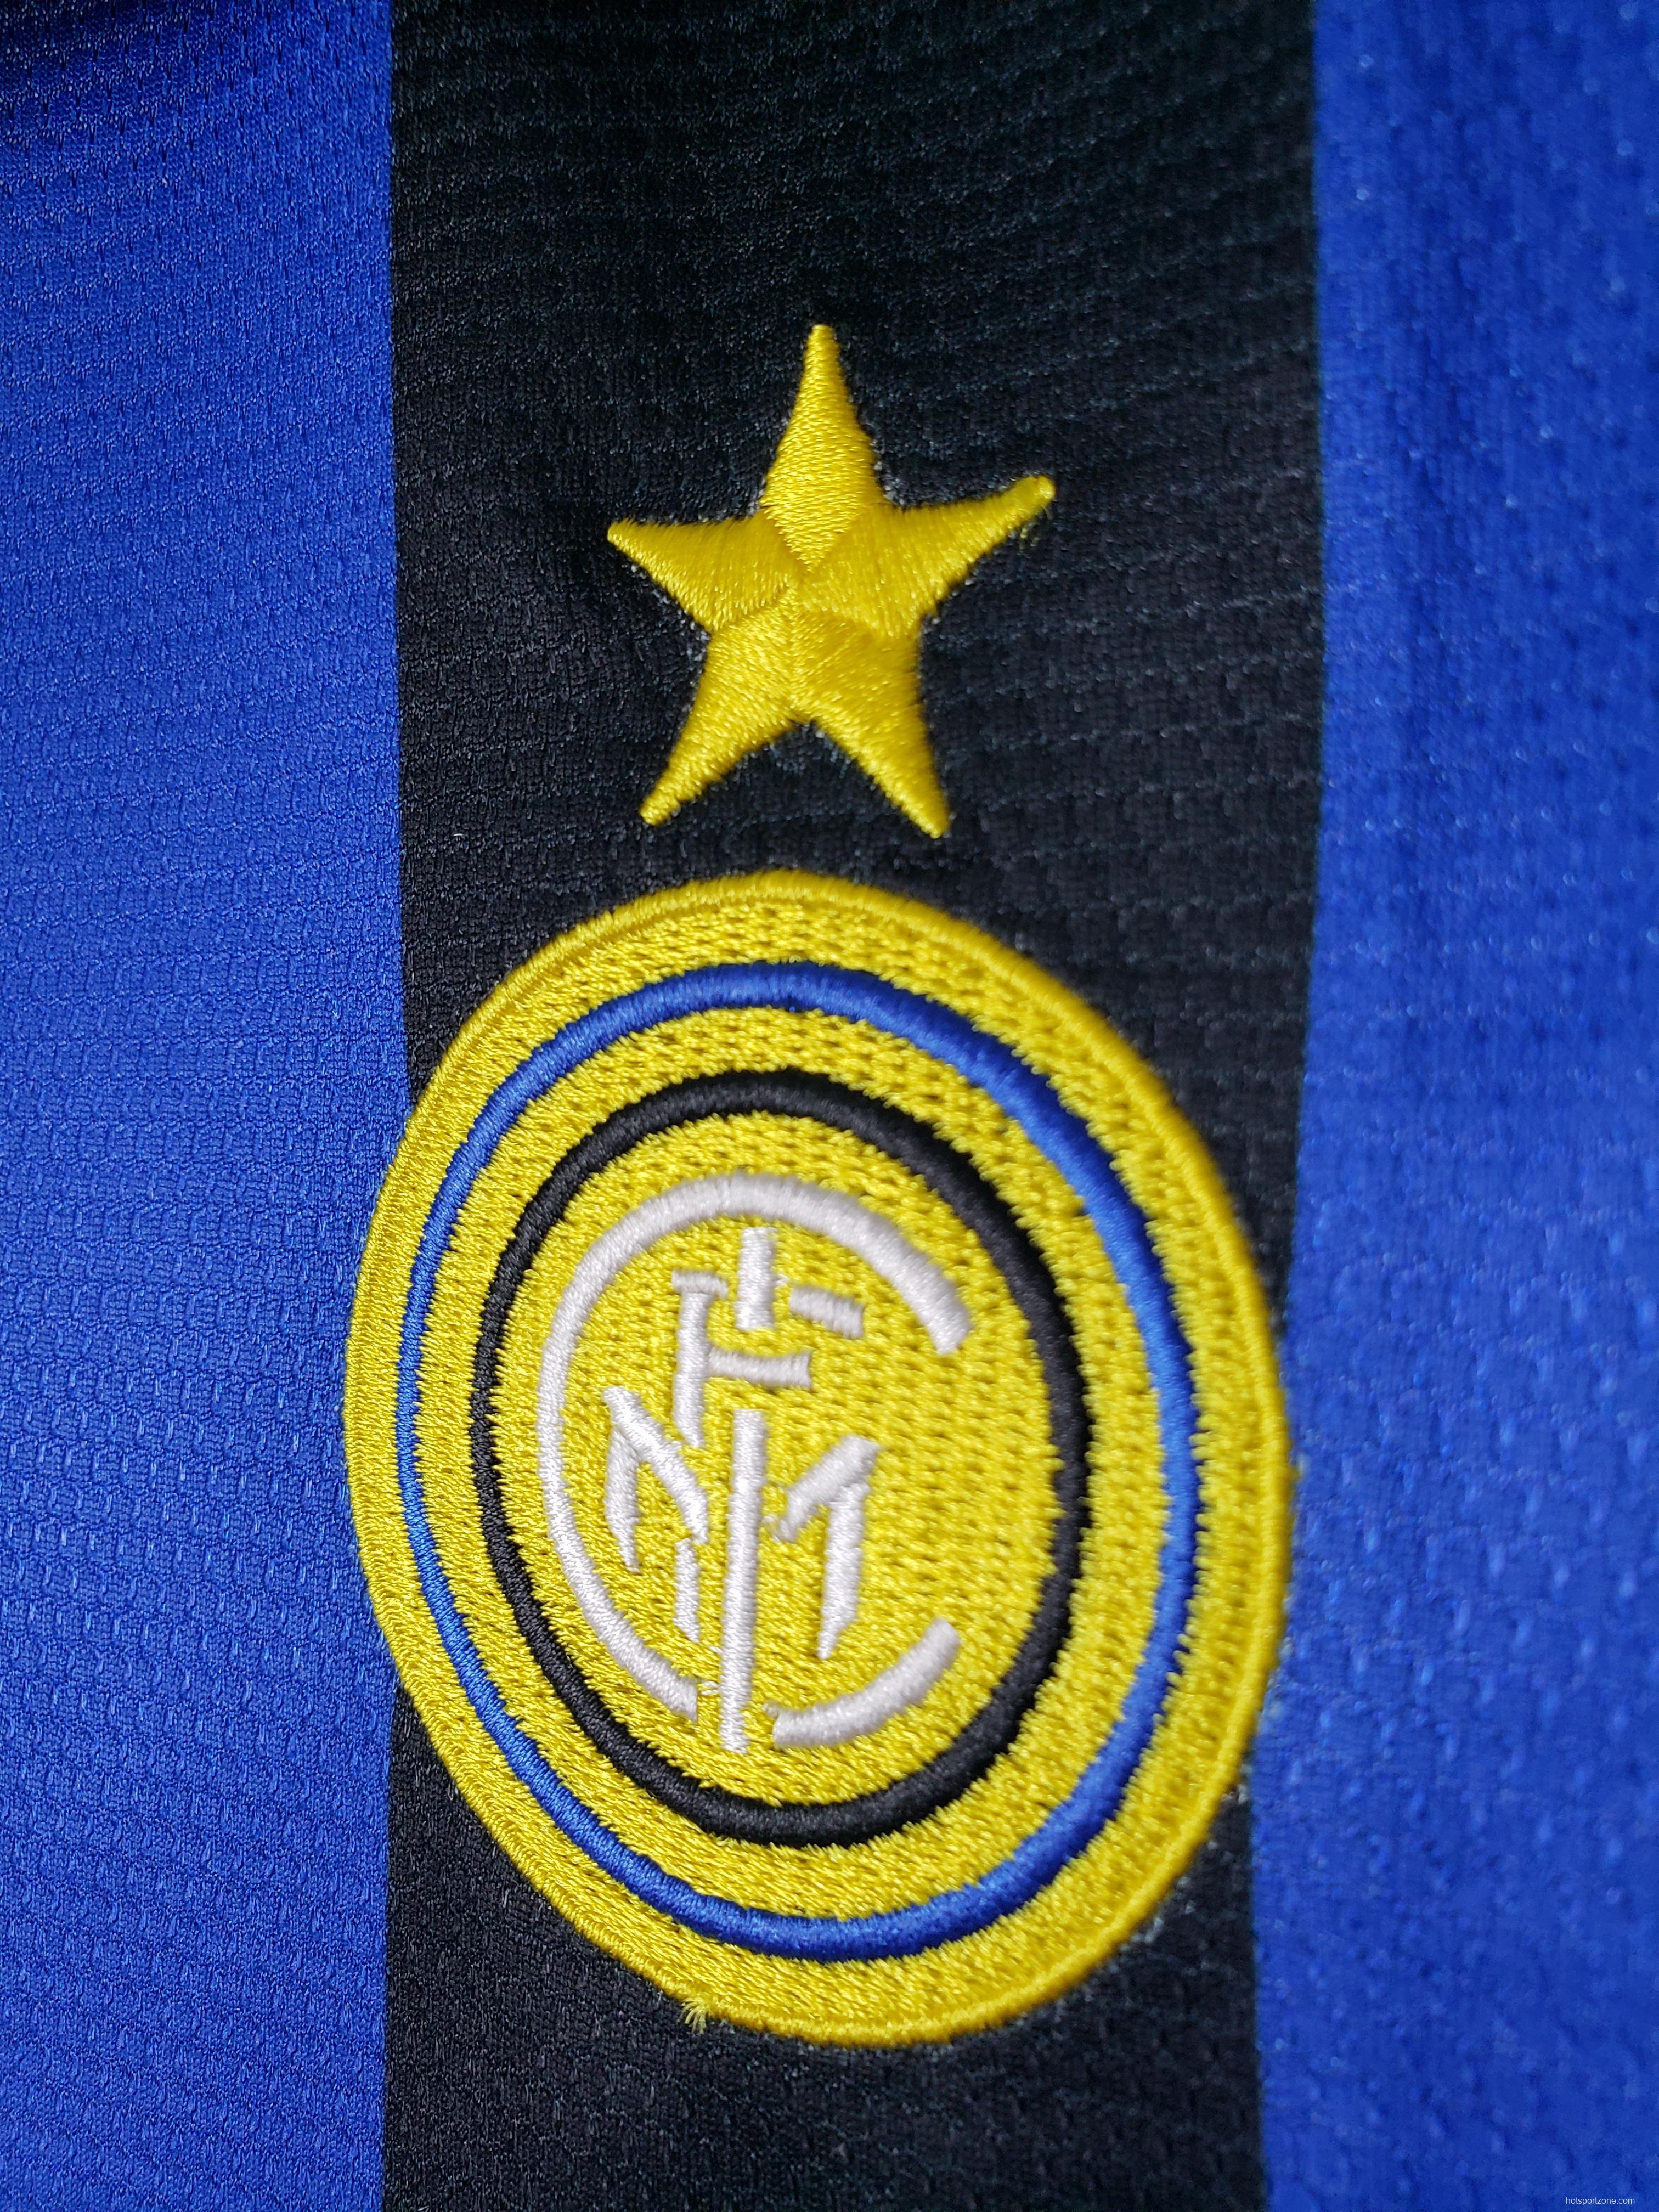 1998 models short-sleeved retro Inter Soccer Jersey